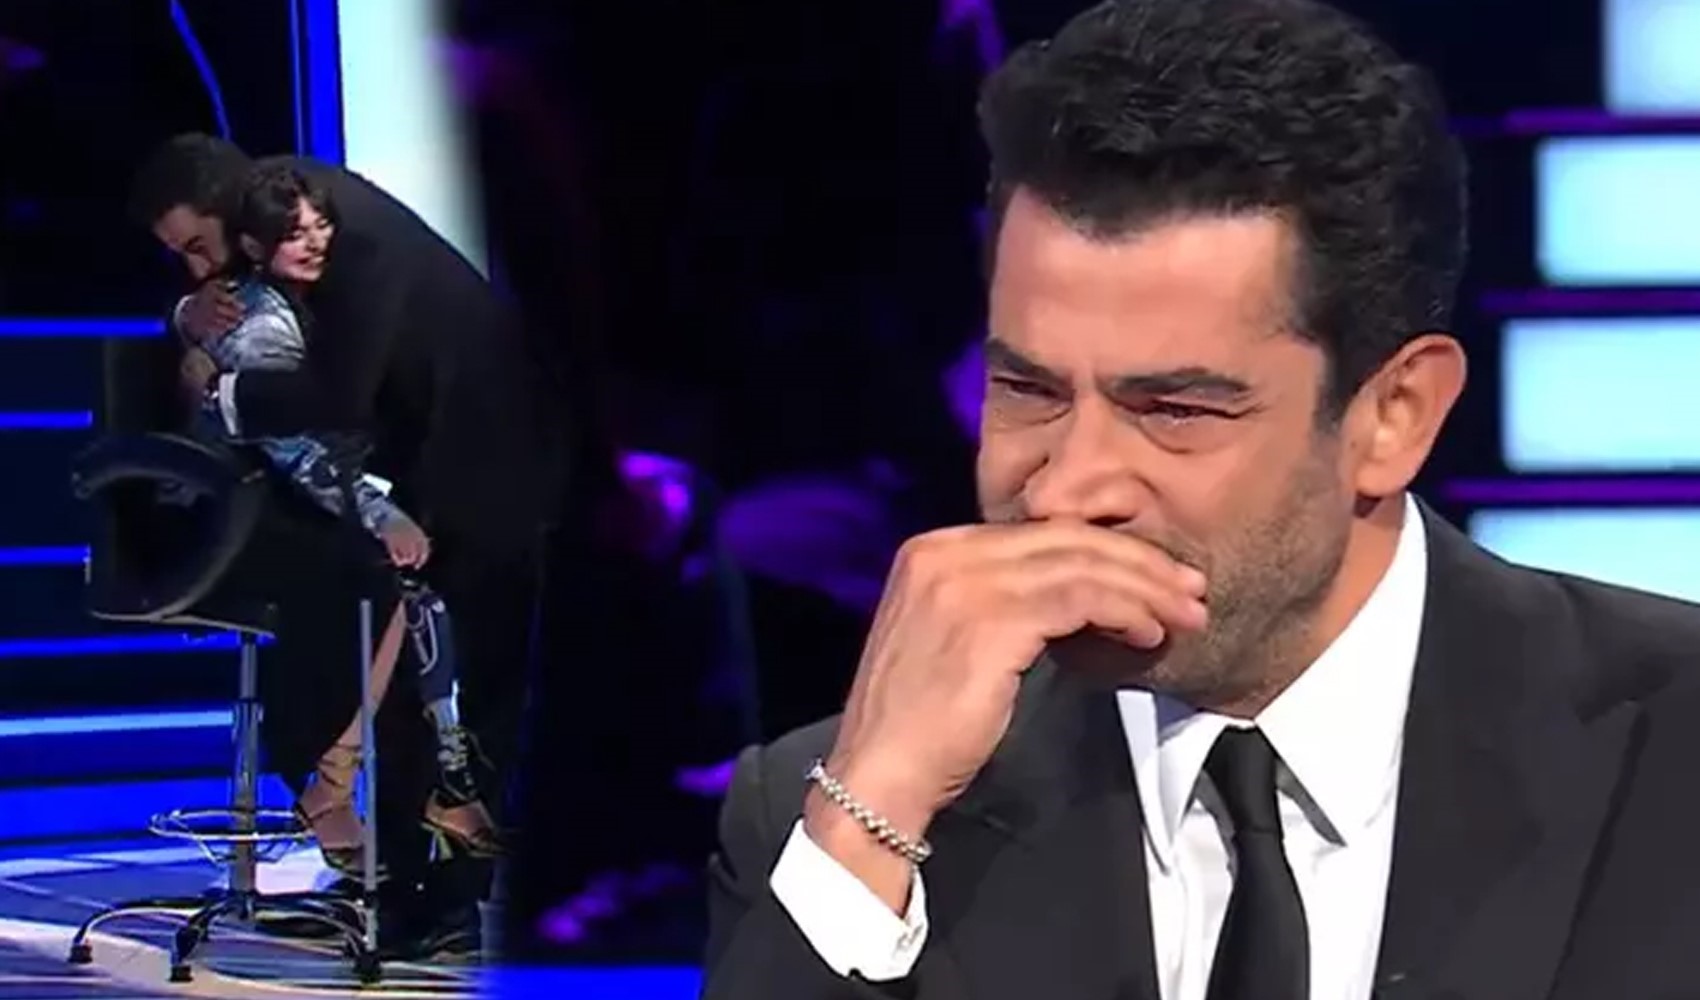 Kim Milyoner Olmak İster’de duygusal anlar: Kenan İmirzalıoğlu yarışmacıya sarılarak ağladı